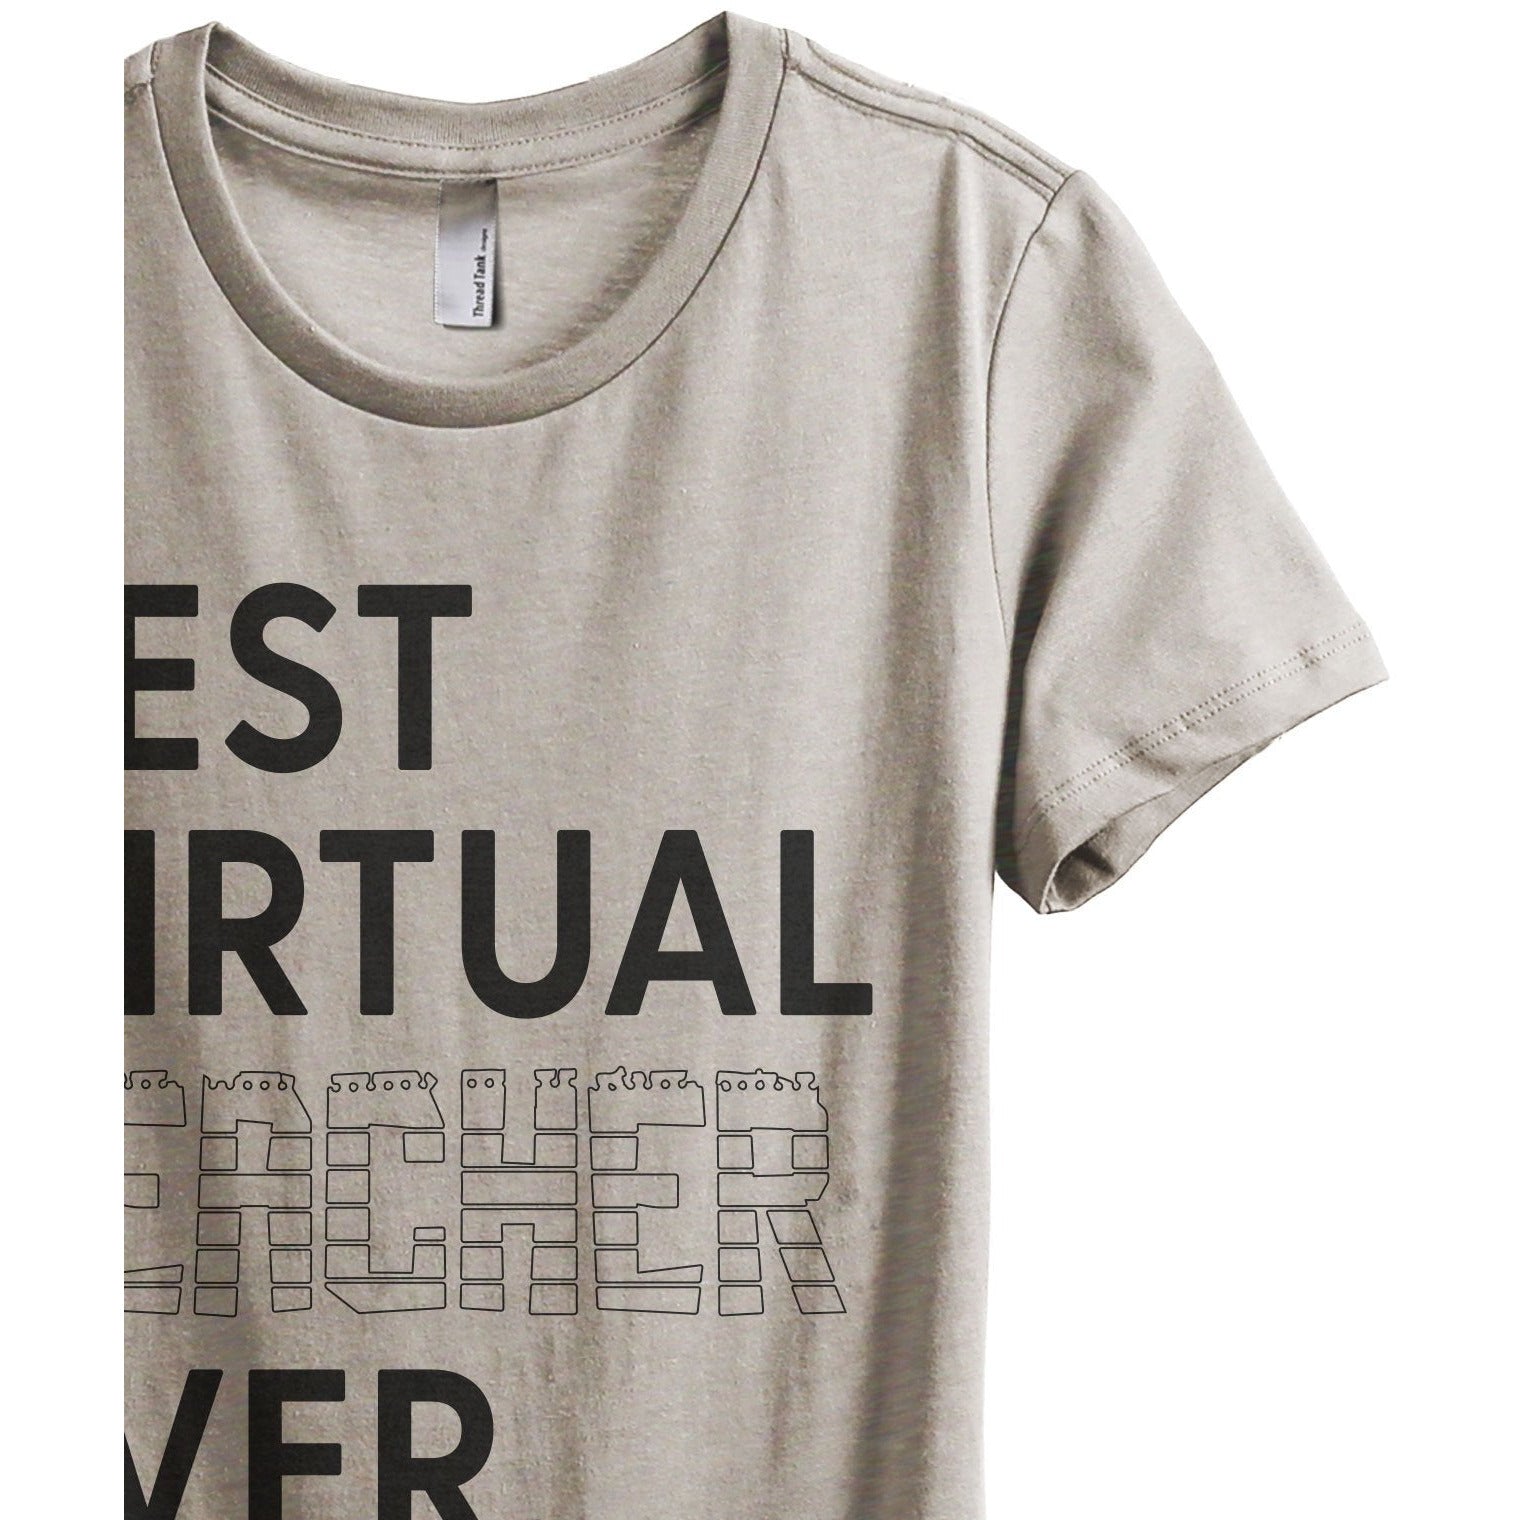 Best Virtual Teacher Ever Women's Relaxed Crewneck T-Shirt Top Tee Heather Tan Zoom Details
